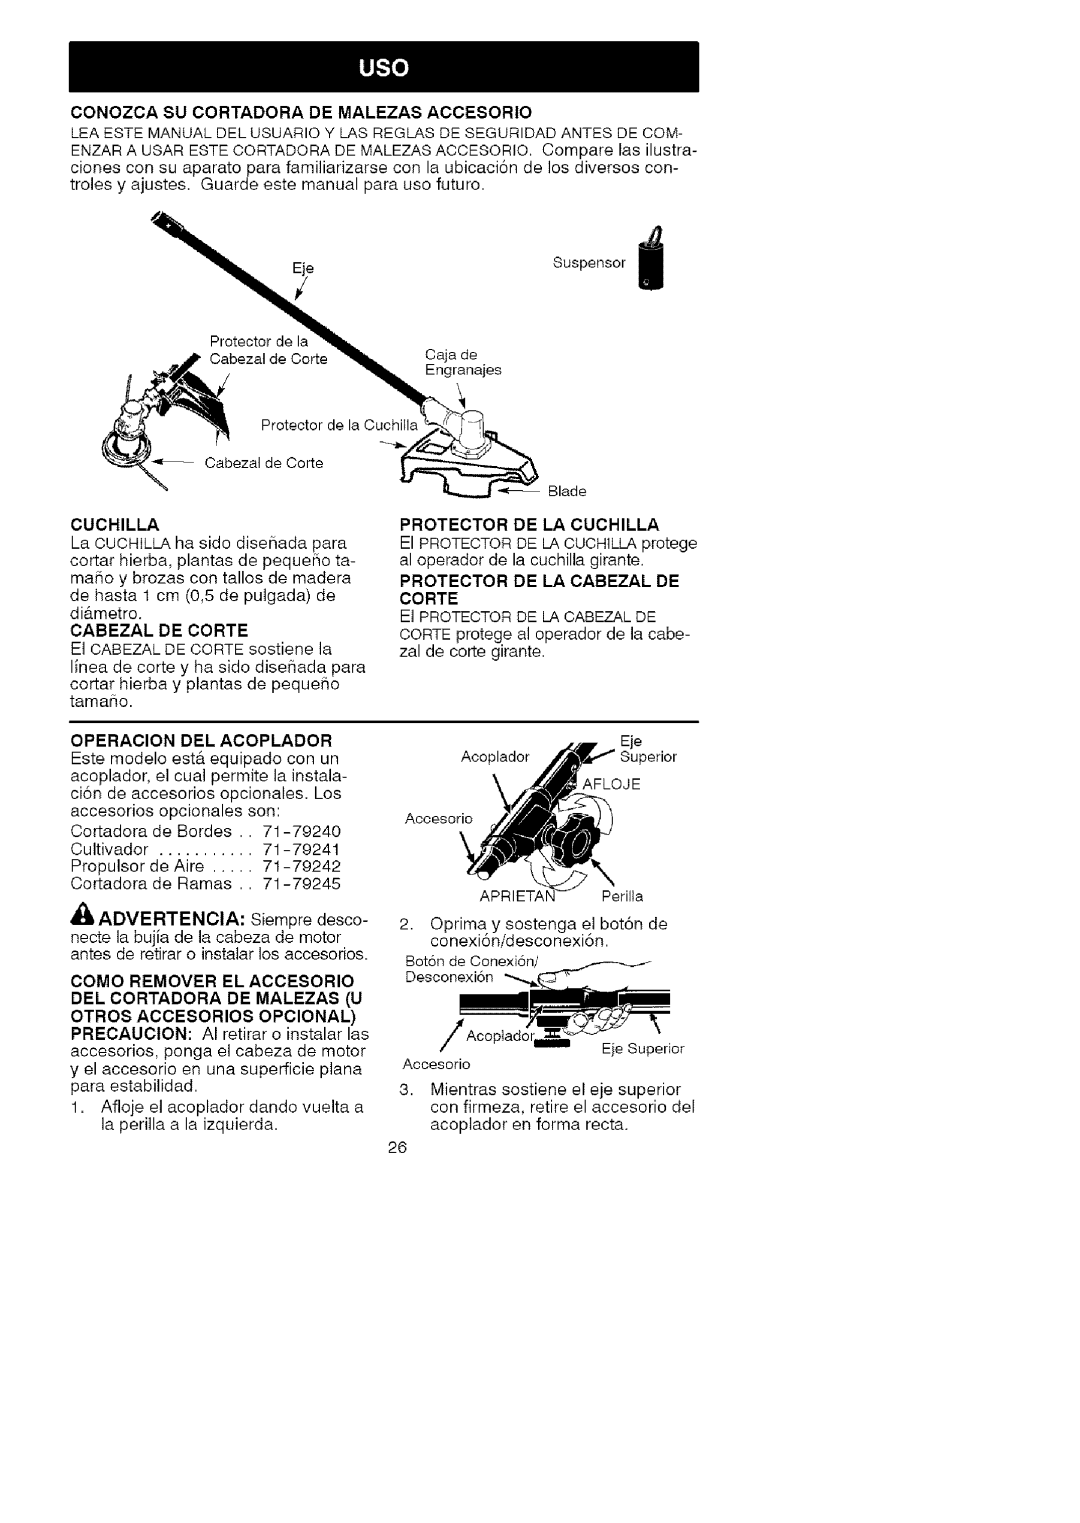 Craftsman 358.792443 manual Del Cortadora De Malezas U, Otros Accesorios Opcional, iAcoplad, Eje Superior 